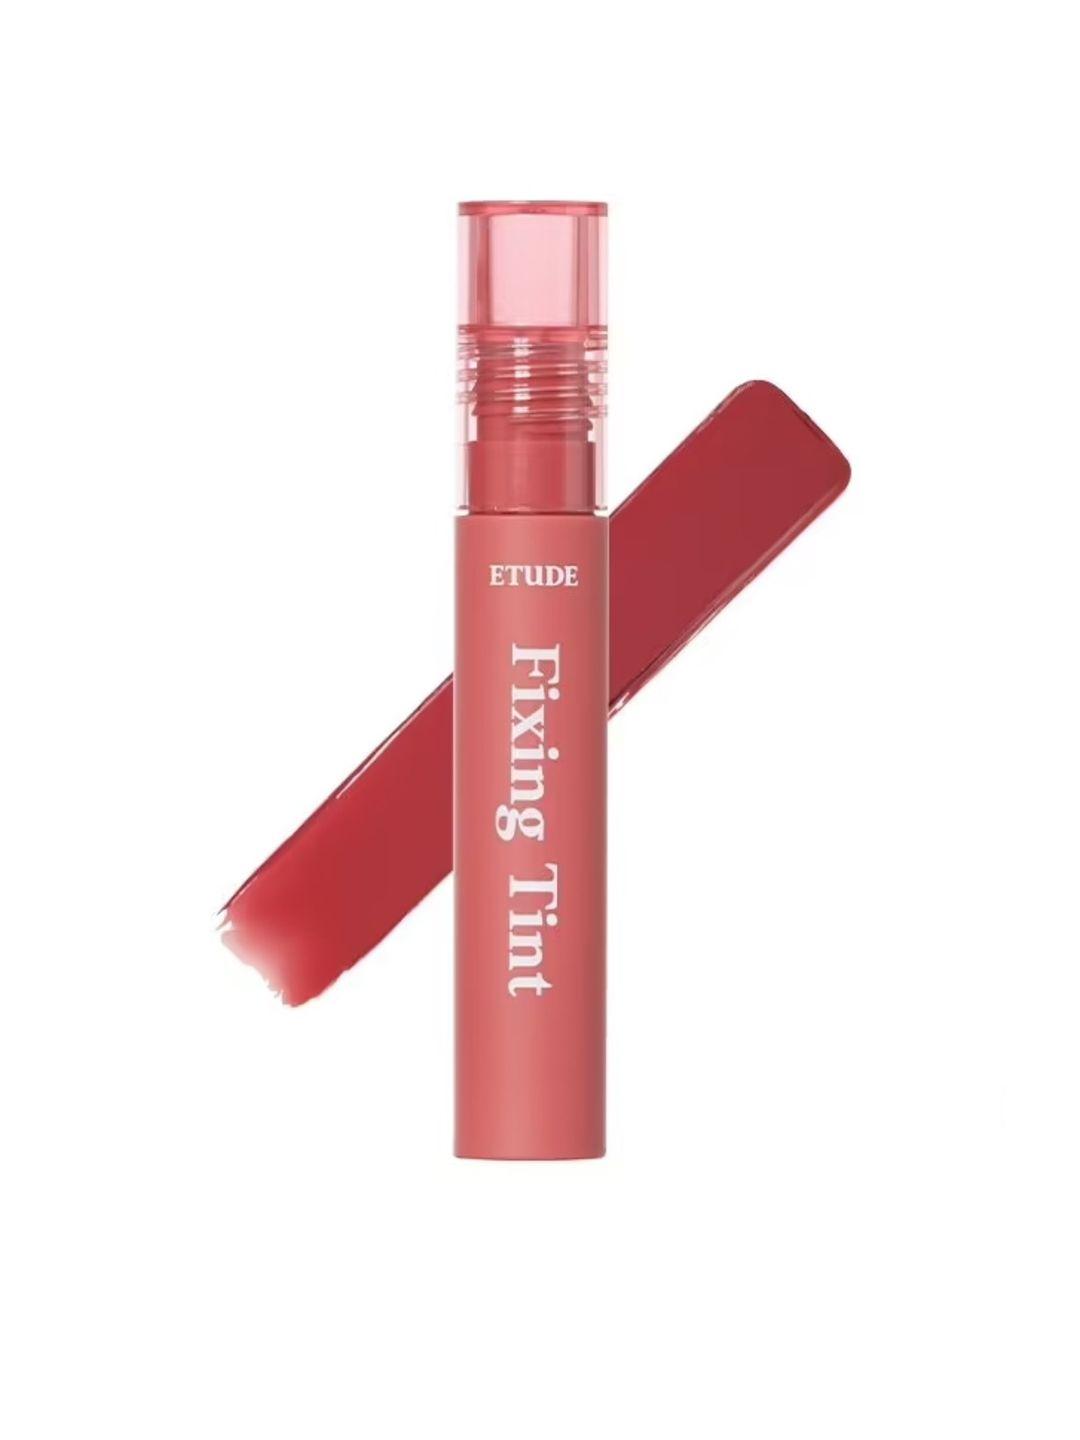 etude hydrating fixing tint lipstick 4 g - analog rose 01